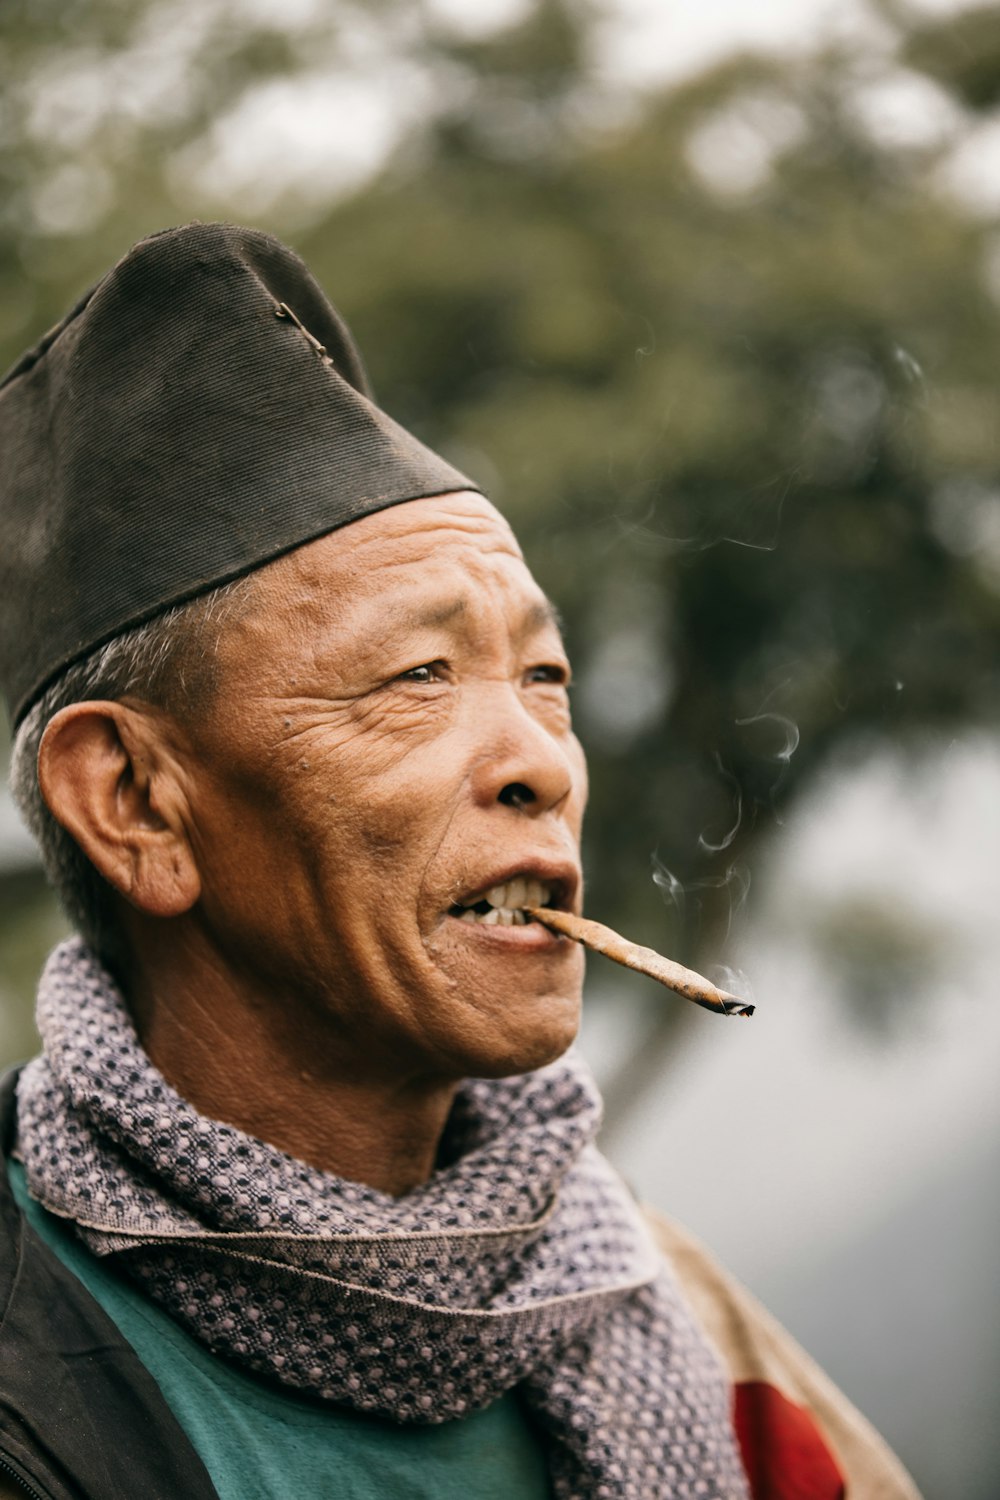 man smoking cigarette wearing black knit cap